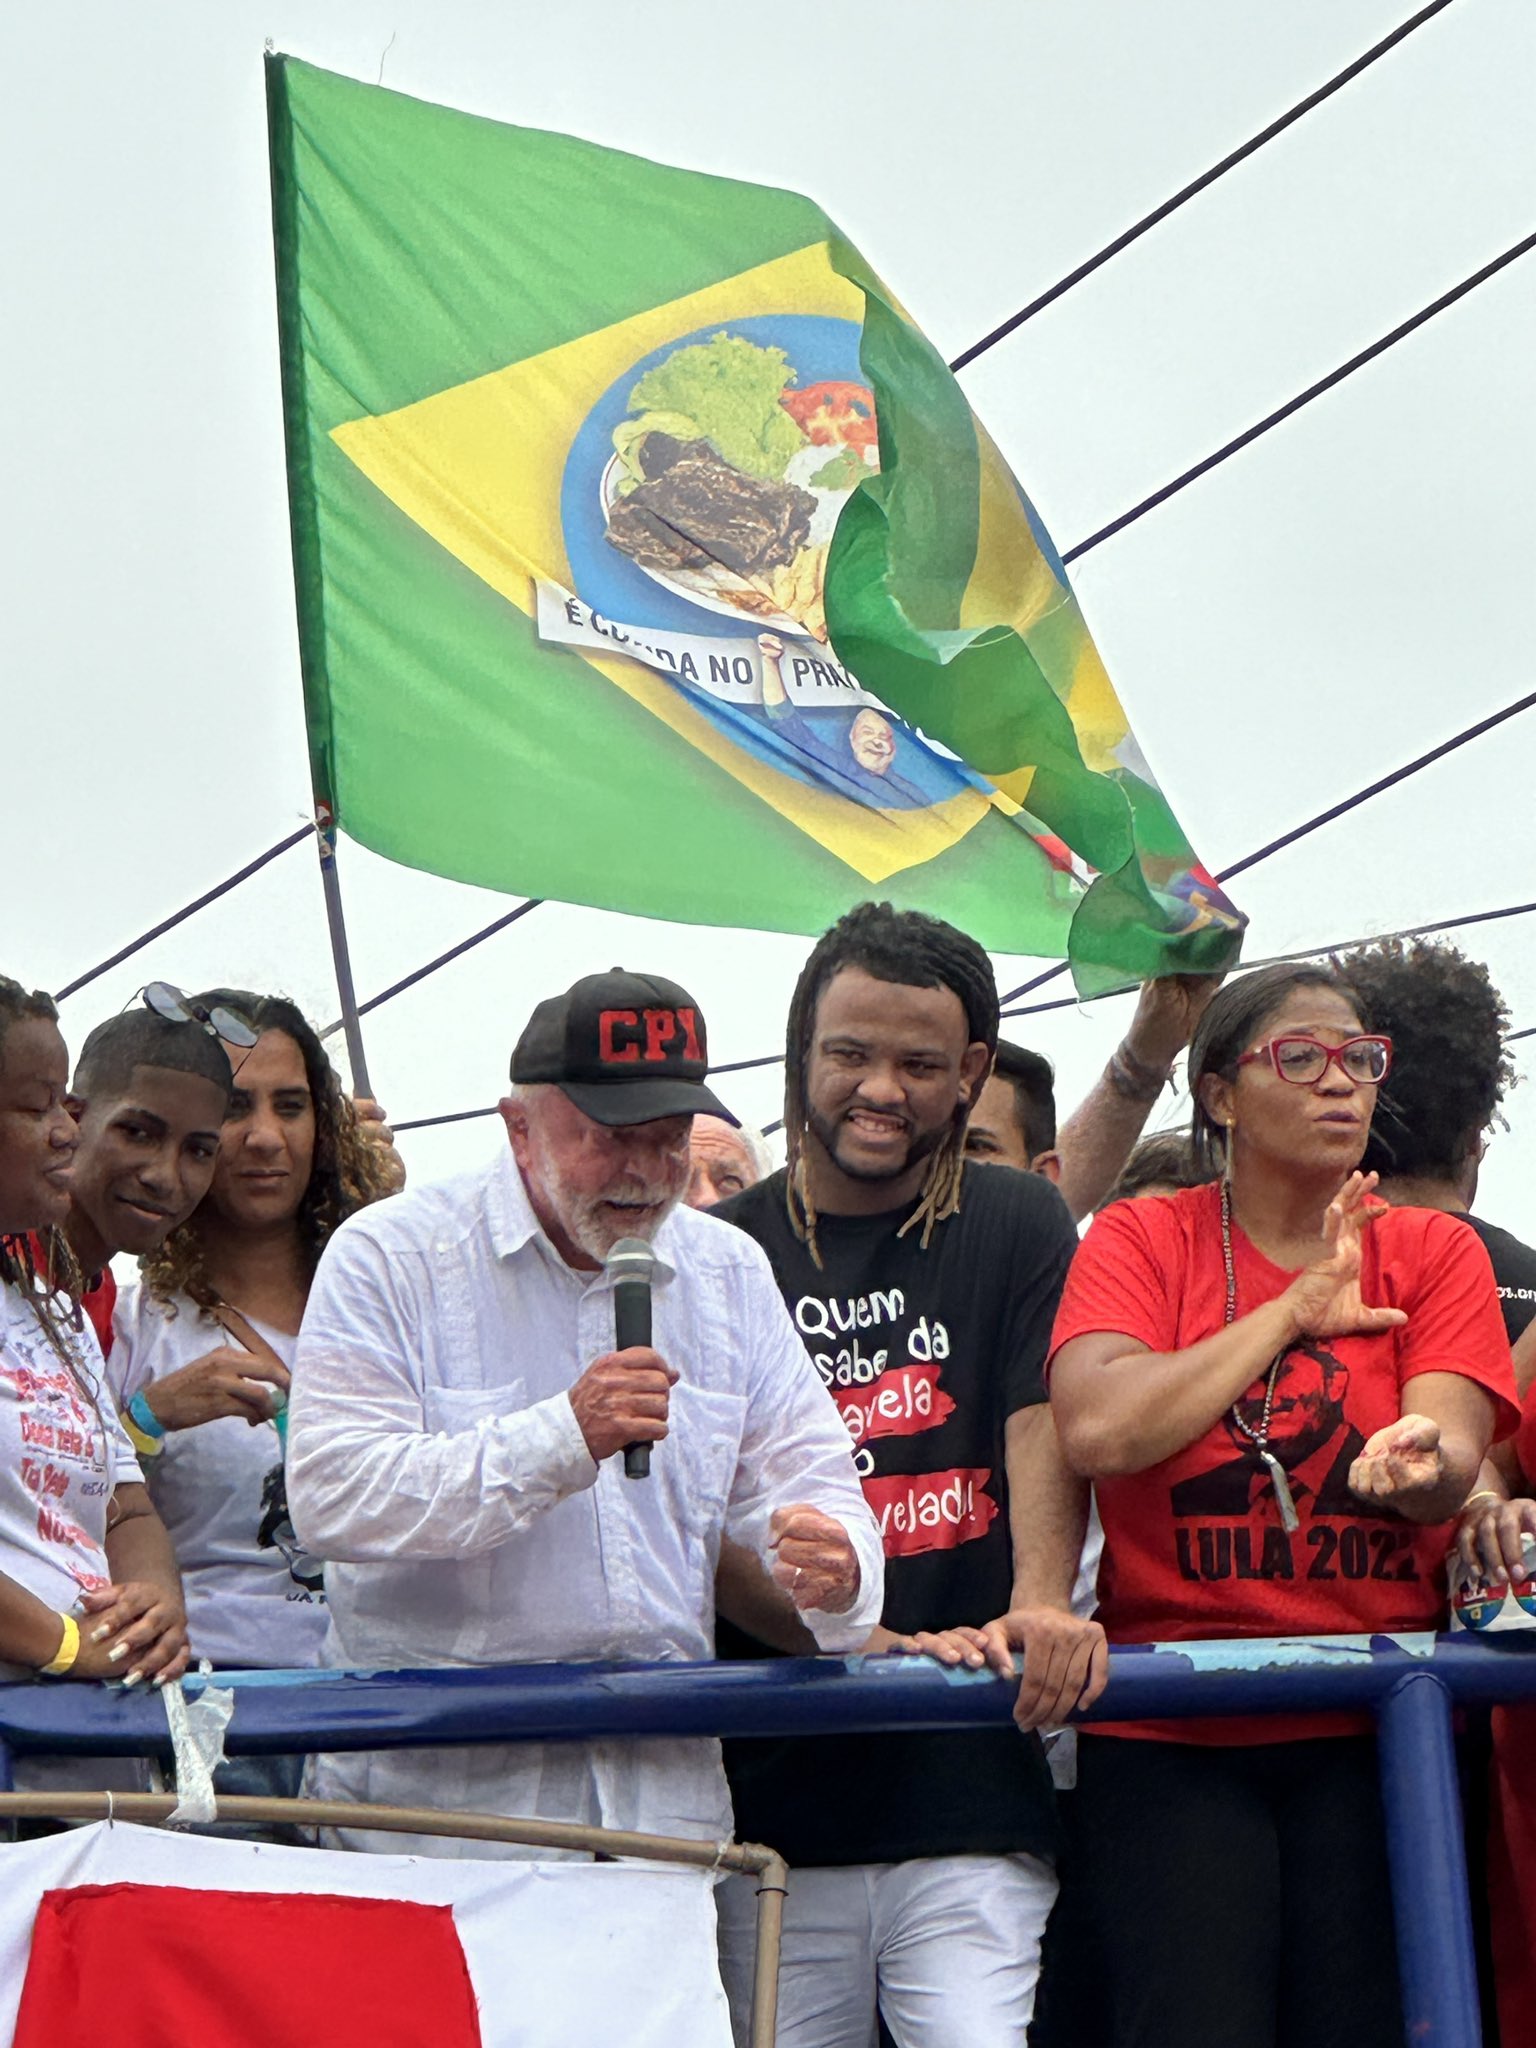 Rene Silva com Lula. Foto: René Silva no Twitter